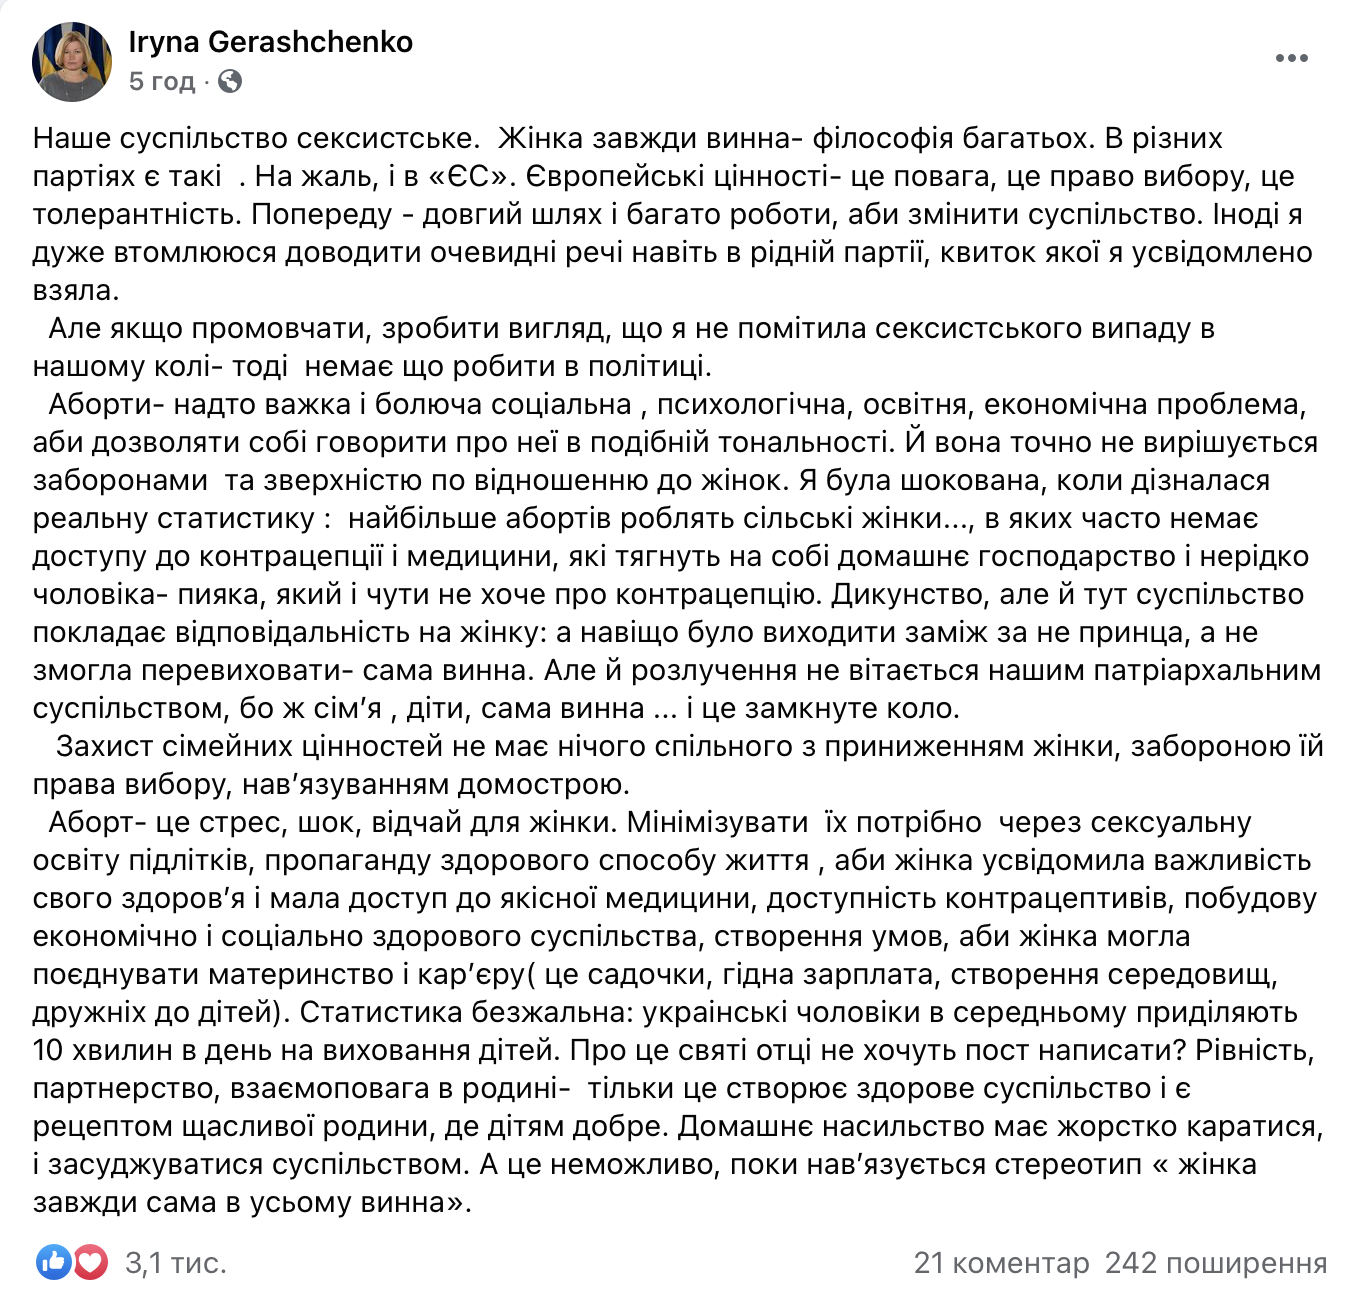 "С@чка не захочет - кобель не вскочит". Священник-депутат от партии Порошенко осудил женщин, делающих аборты